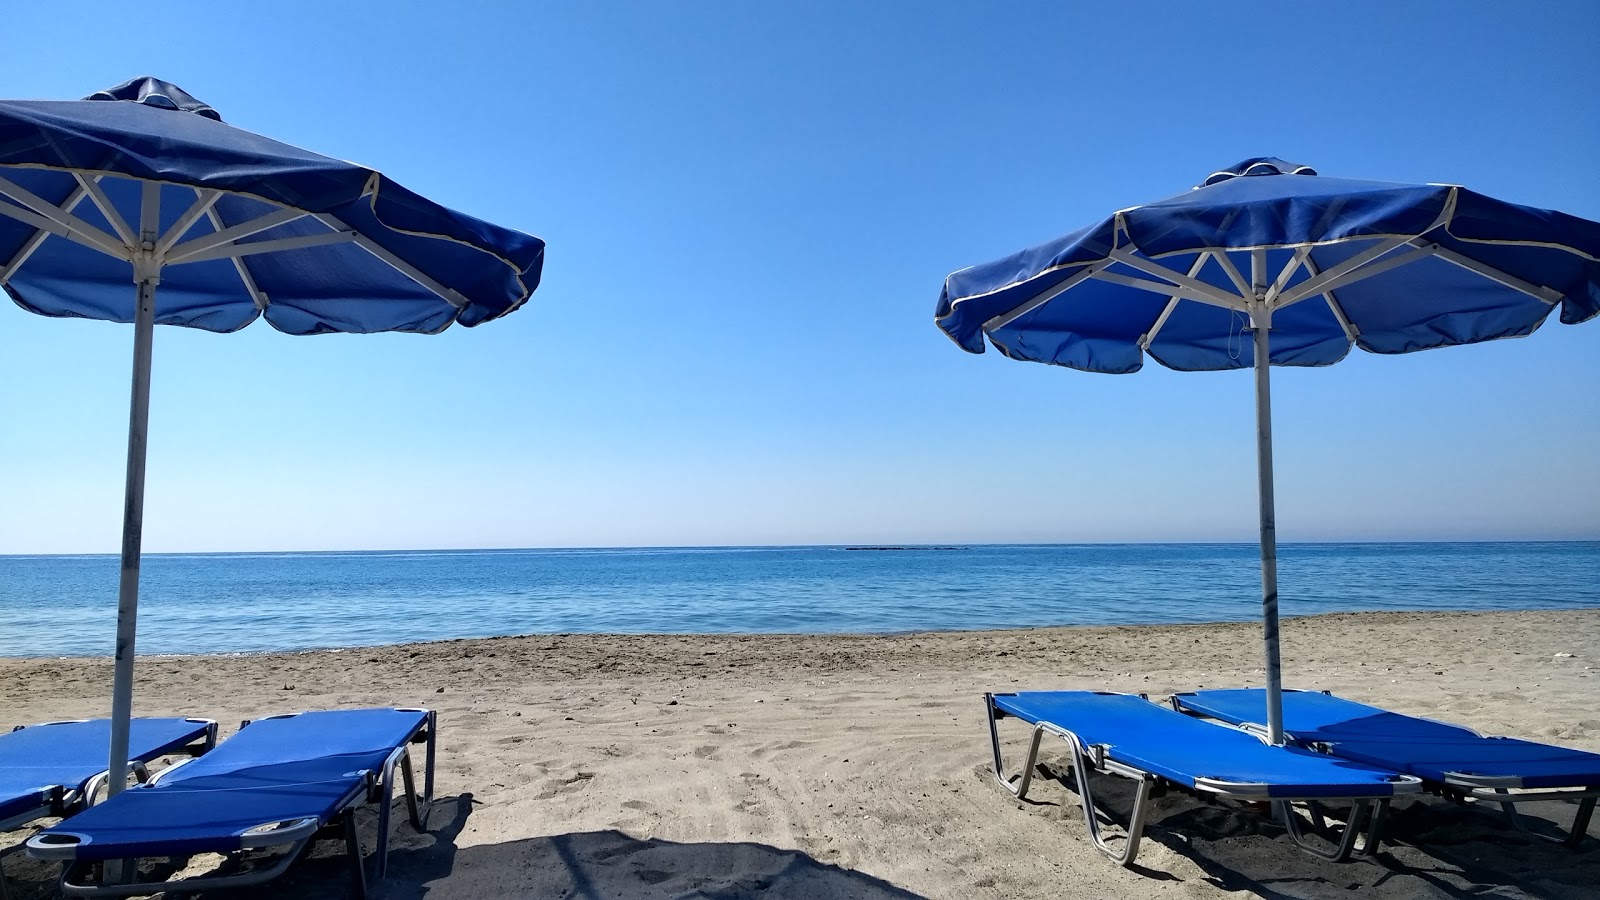 Foto de Frangokastello beach - lugar popular entre los conocedores del relax